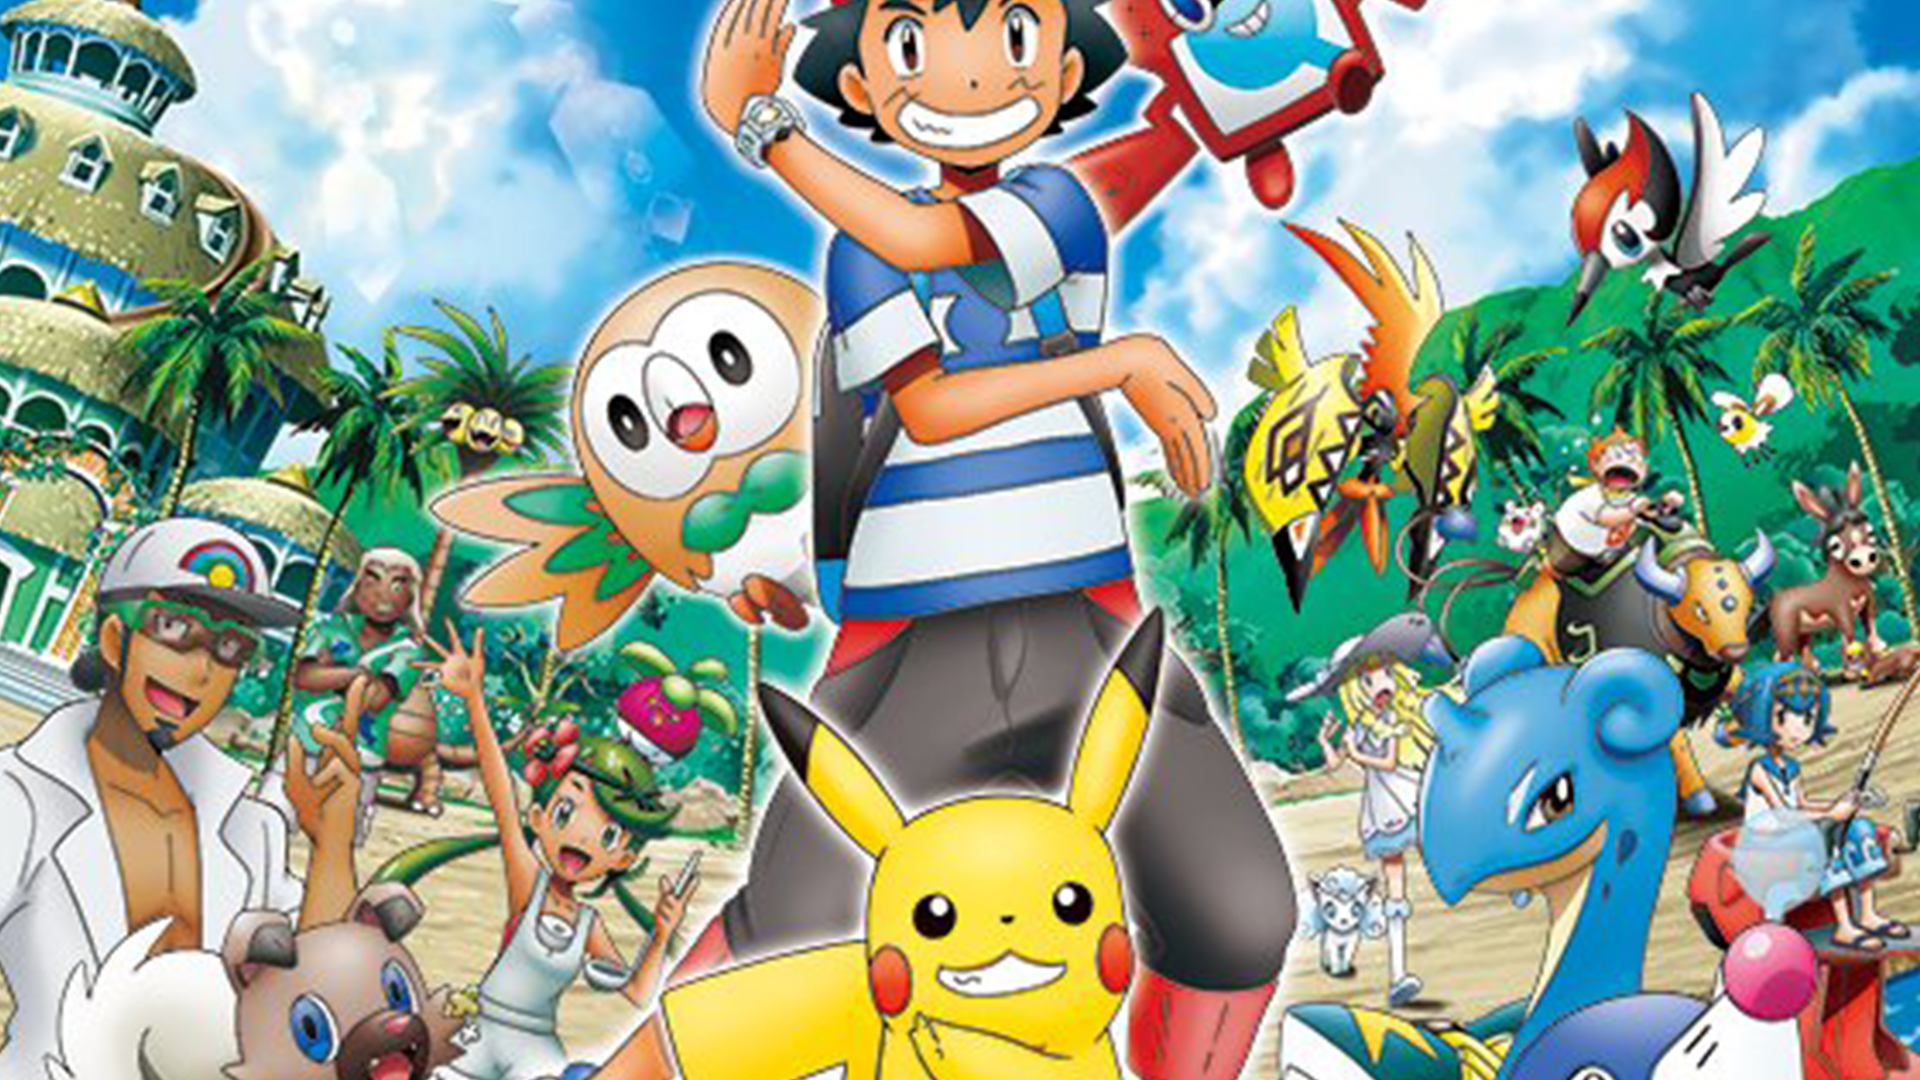 pokemon sun and moon wallpaper,animated cartoon,cartoon,pokémon,animation,anime